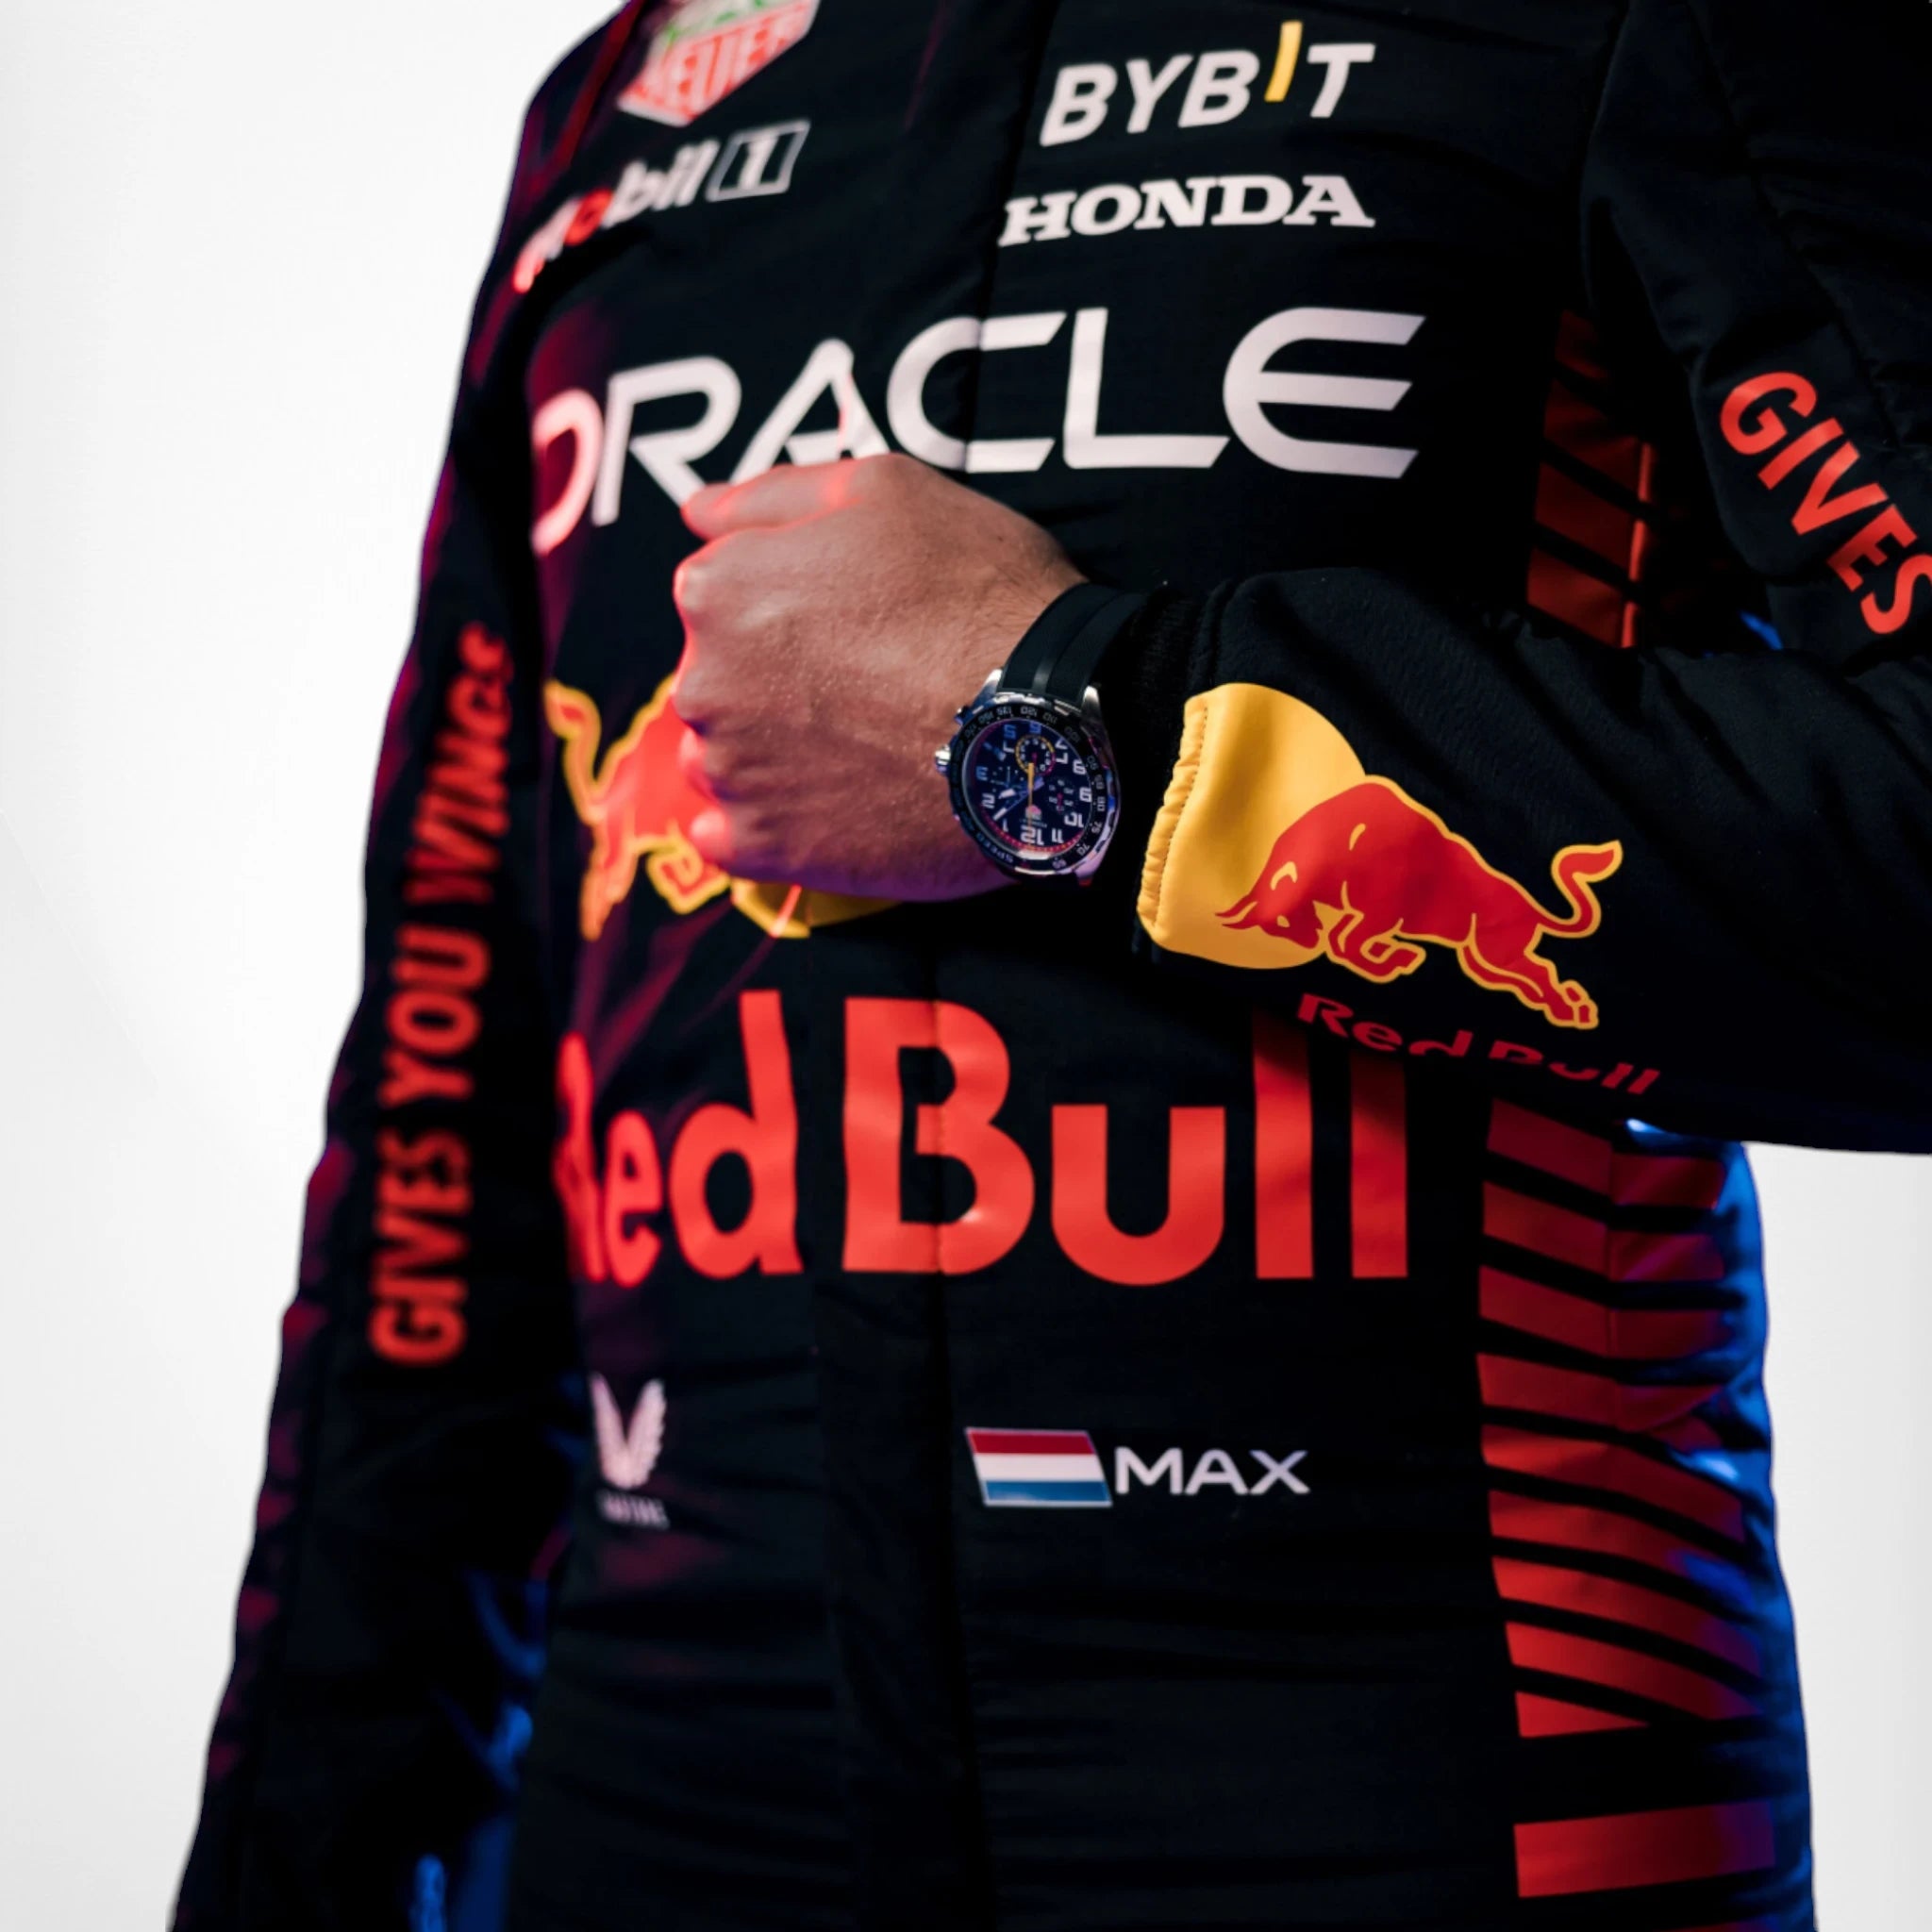 2023 Red Bull Max Verstappen F1 Race Suit